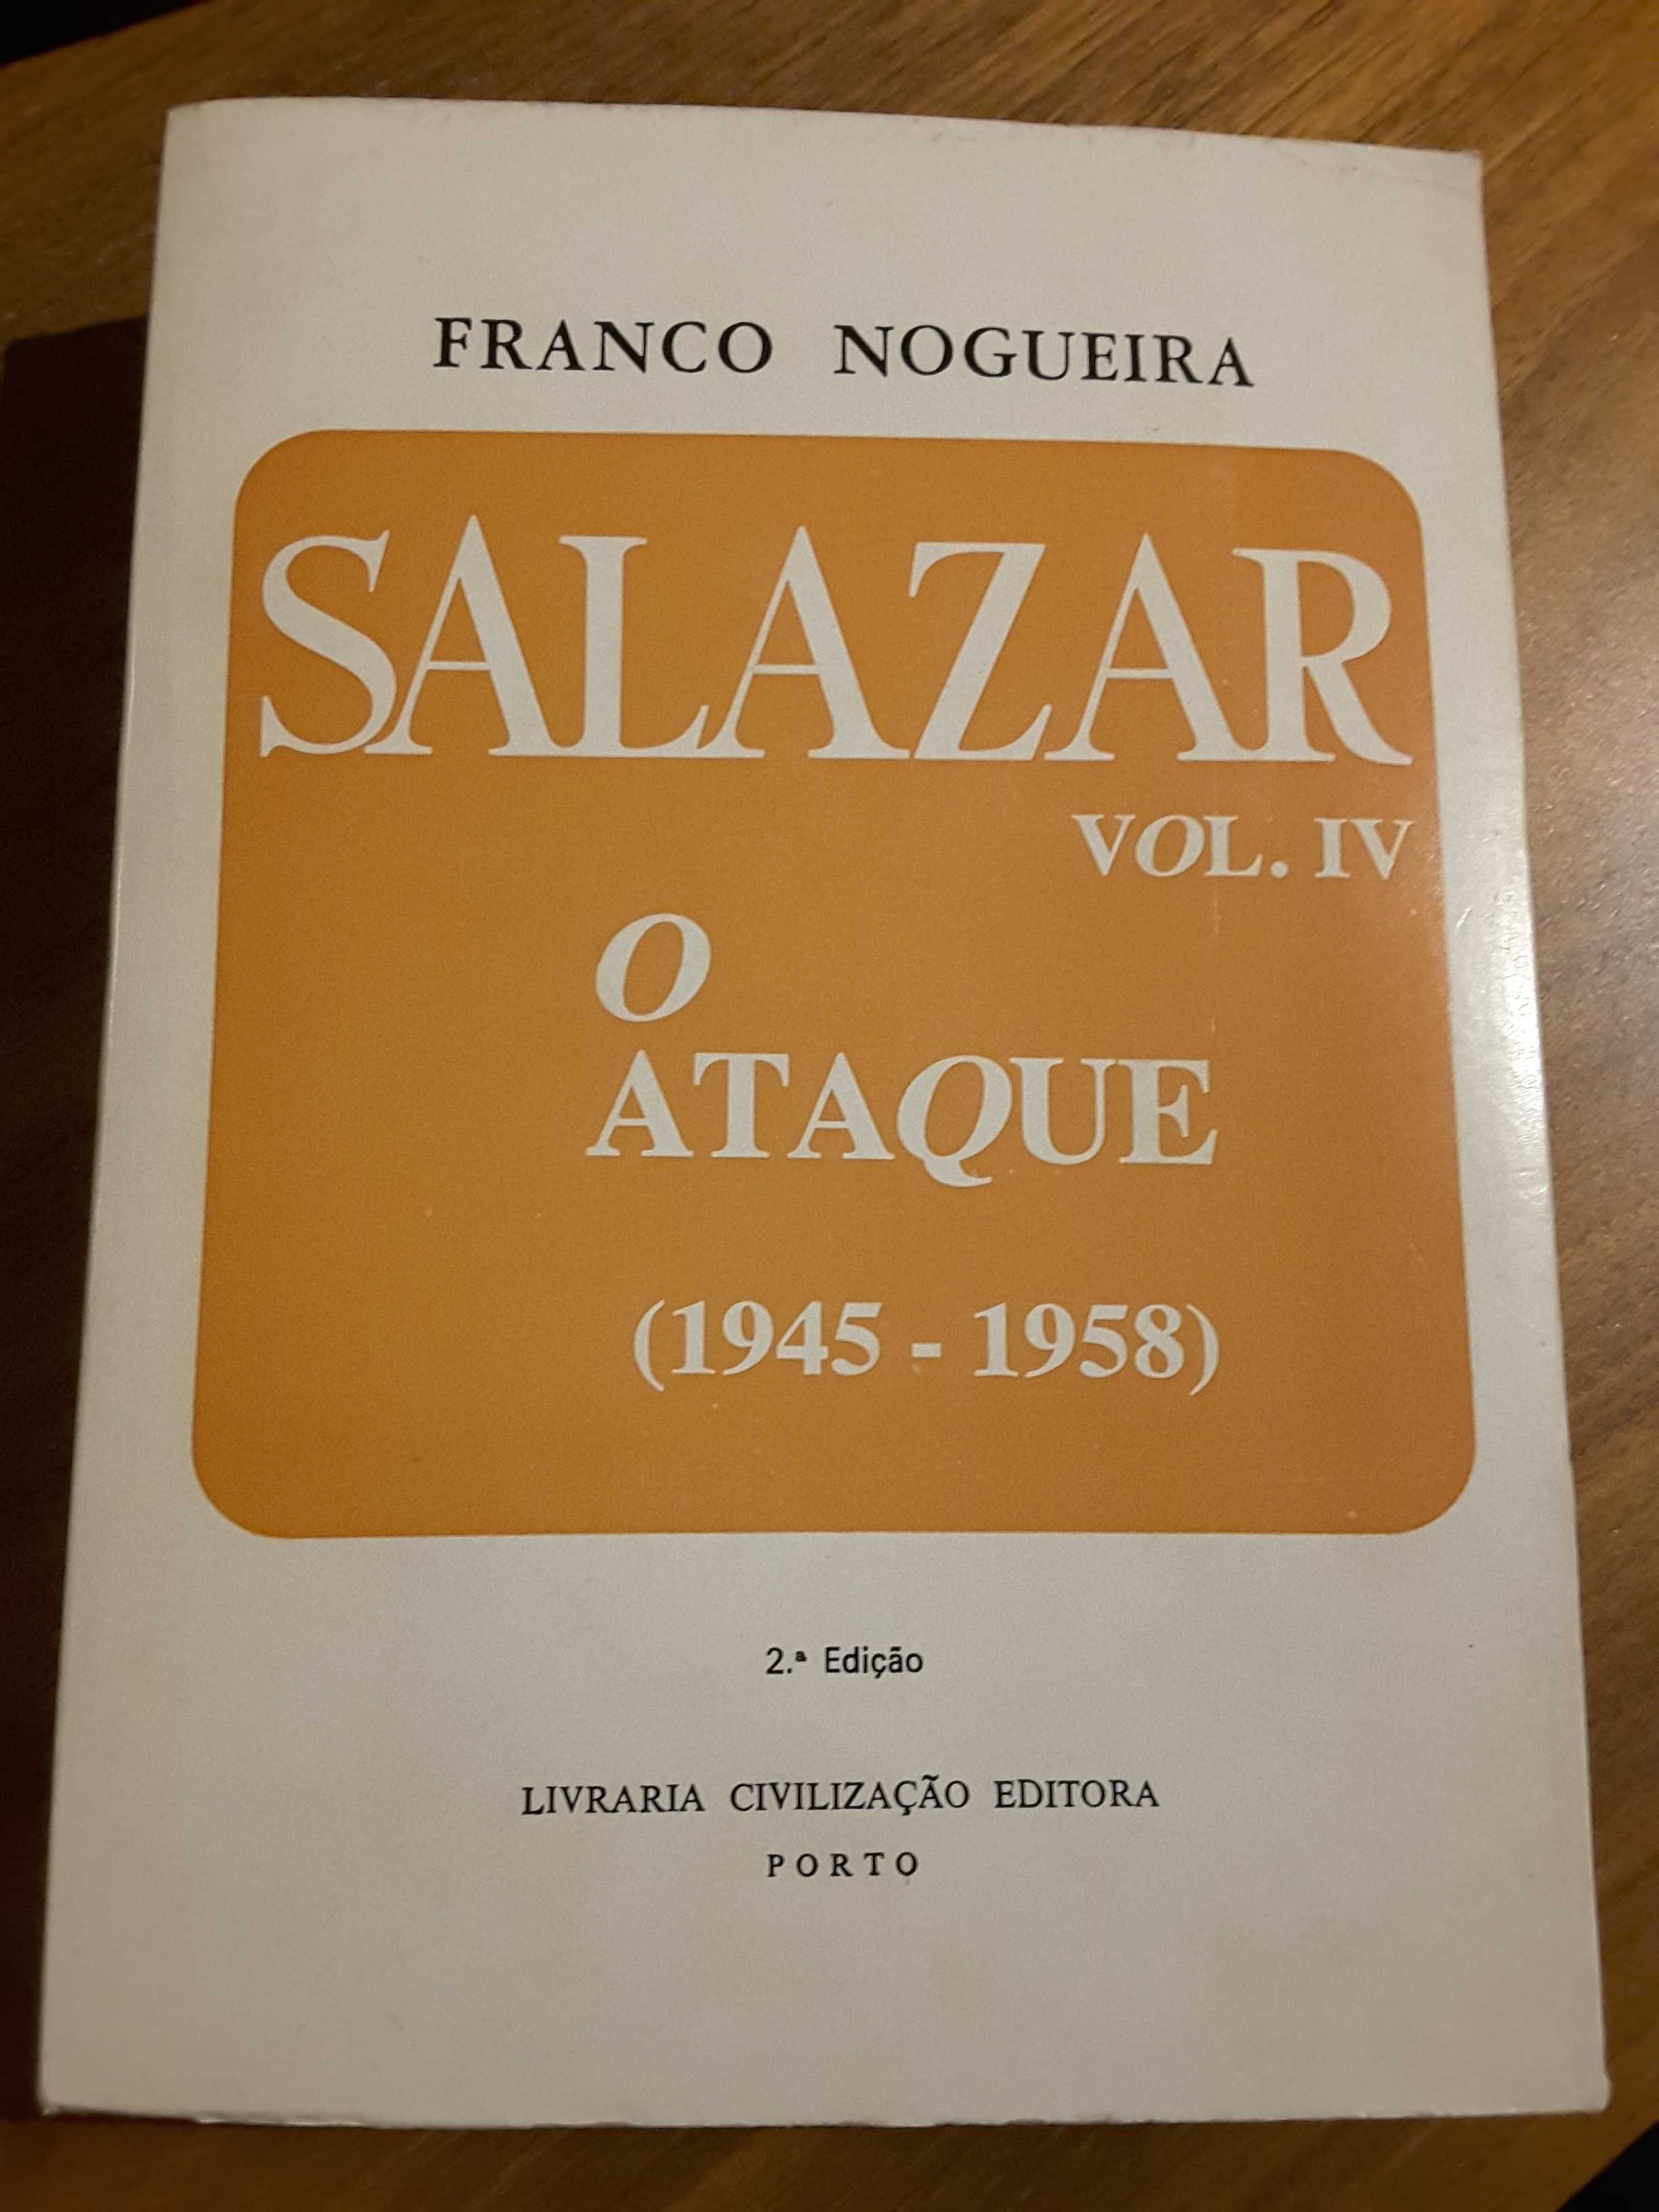 Franco Nogueira – Salazar / Marcello Caetano